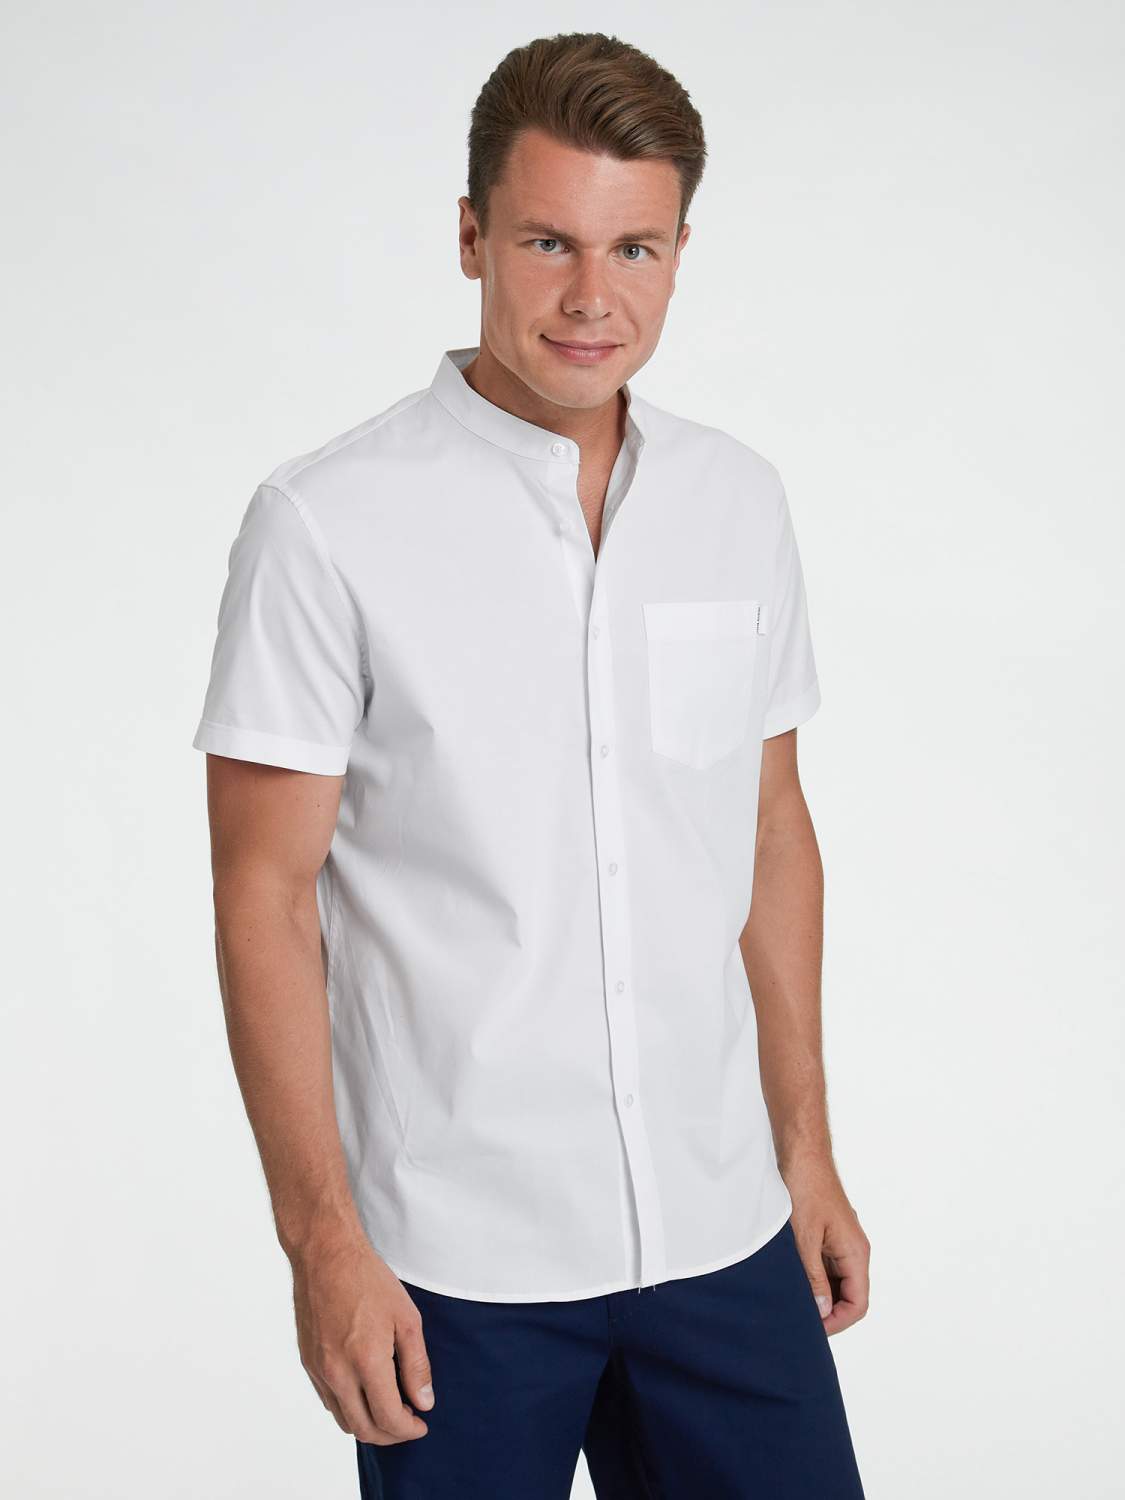 Рубашки с коротким рукавом мужские - купить рубашку с коротким рукавом мужскую, цены на Мегамаркет